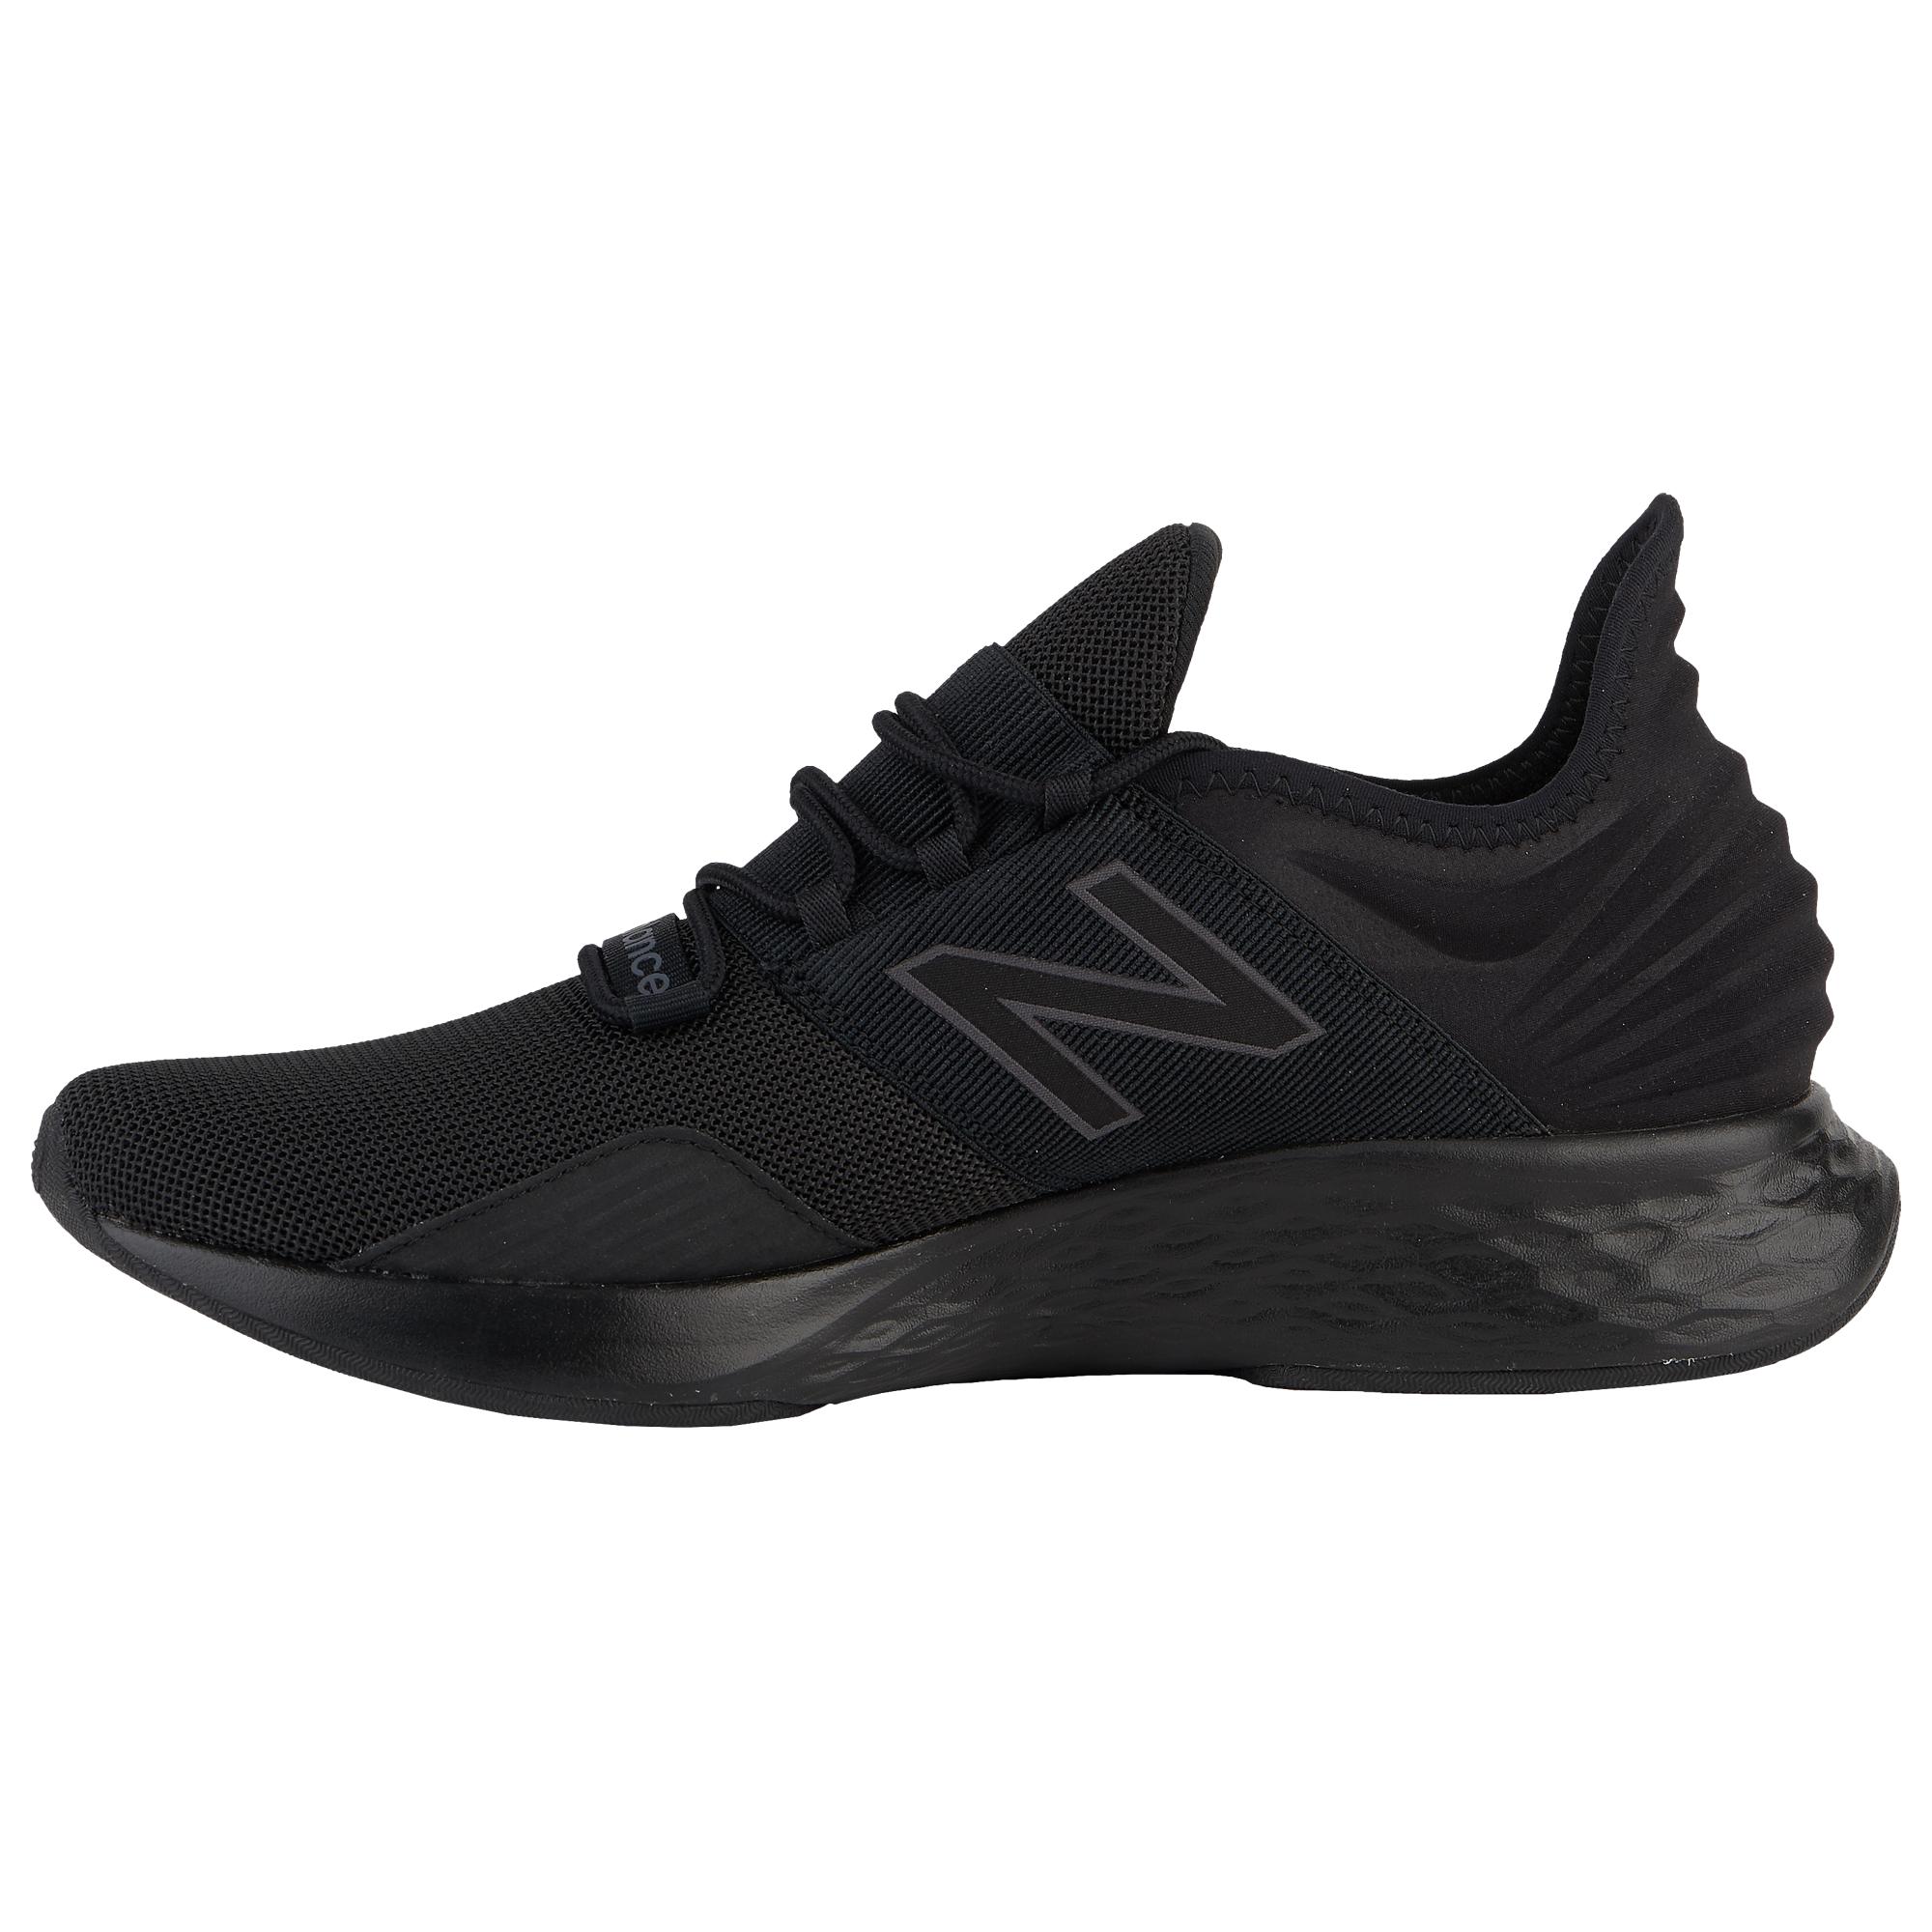 New Balance Fresh Foam Roav Running Shoes in Black for Men - Lyst